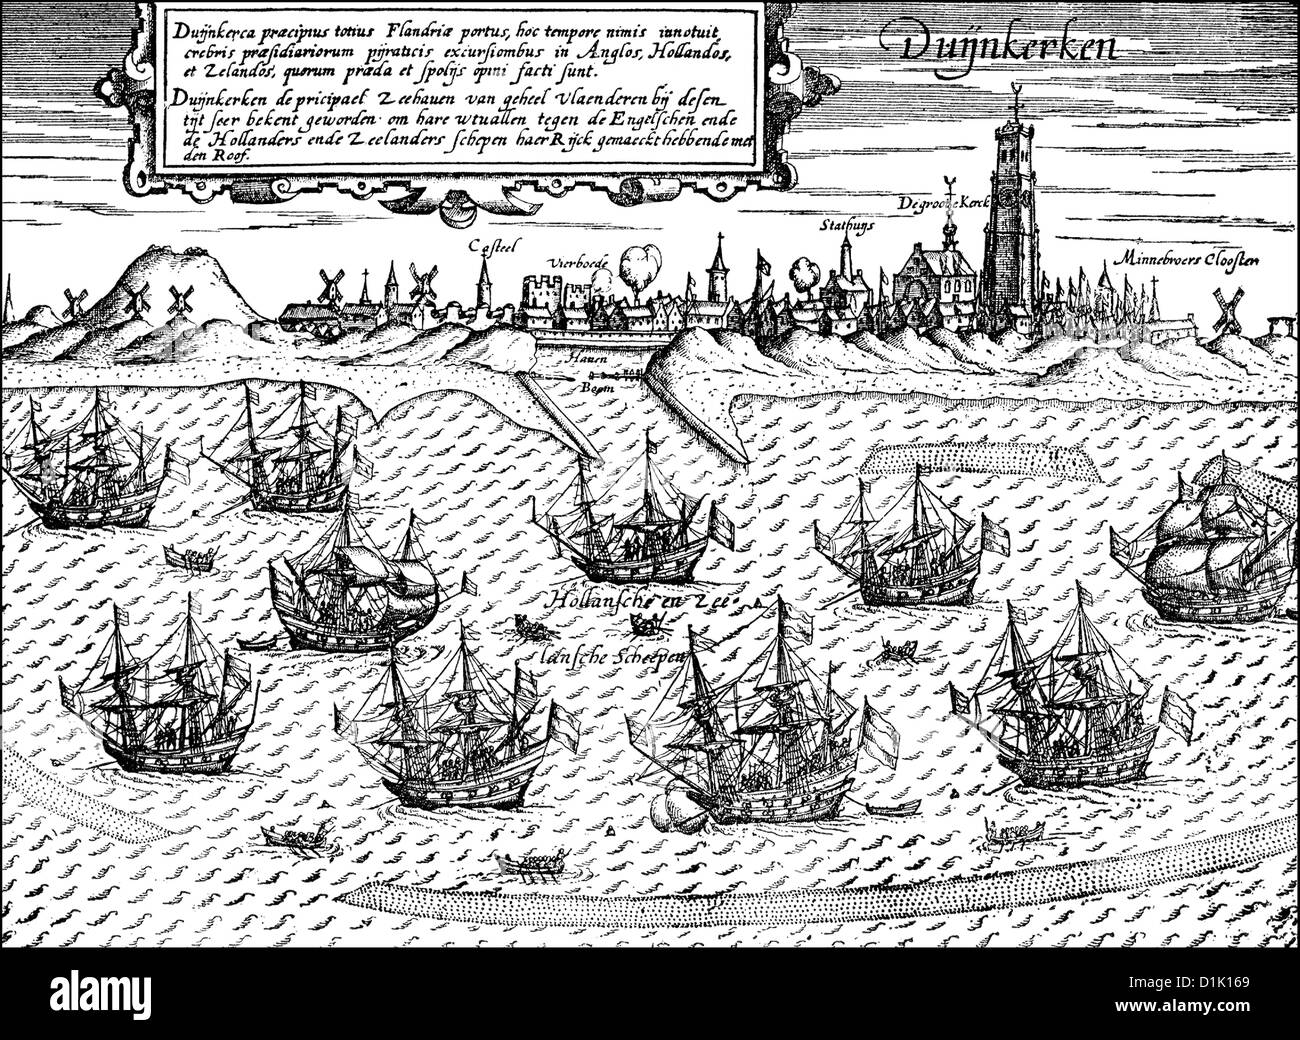 Le port de Dunkerque, Pays-Bas espagnols, aujourd'hui la France, 16e siècle Banque D'Images